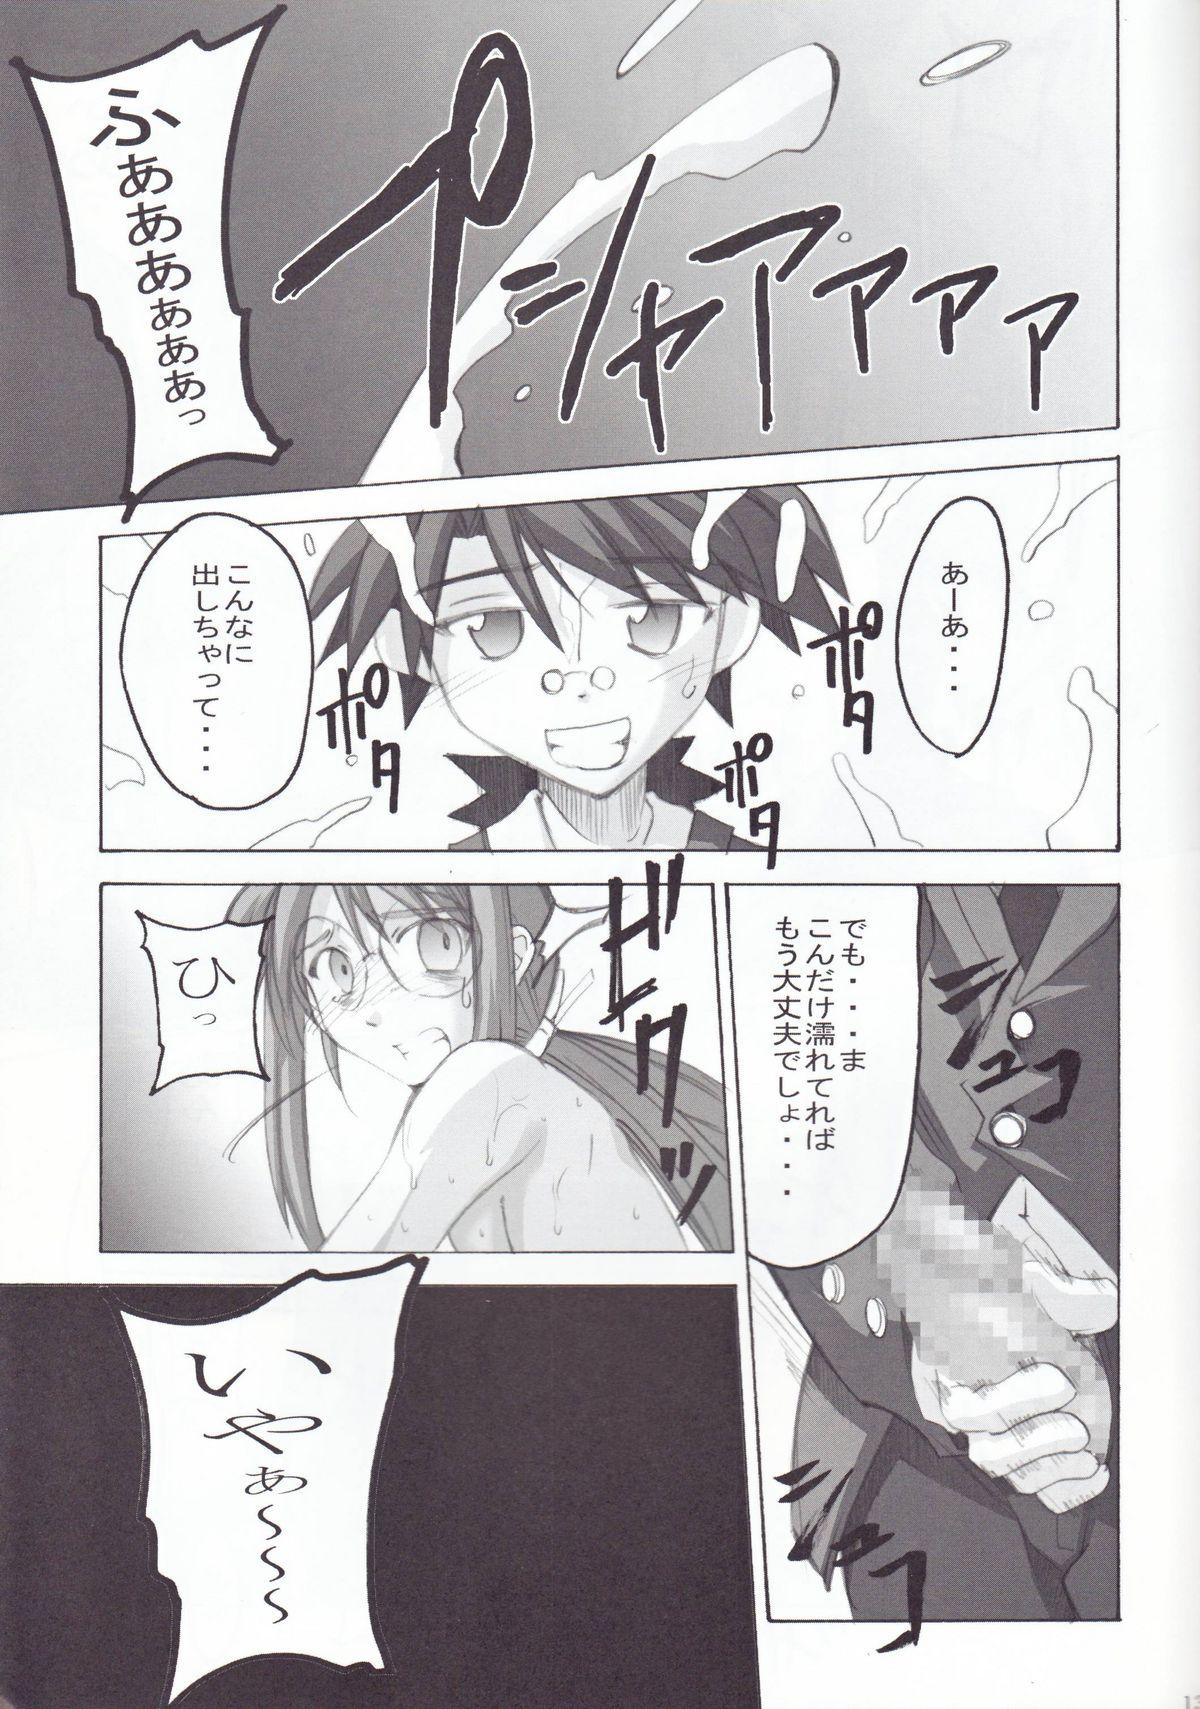 Blow Jobs Porn Negimagi! vol. 1 - Mahou sensei negima Amateur Porn - Page 12